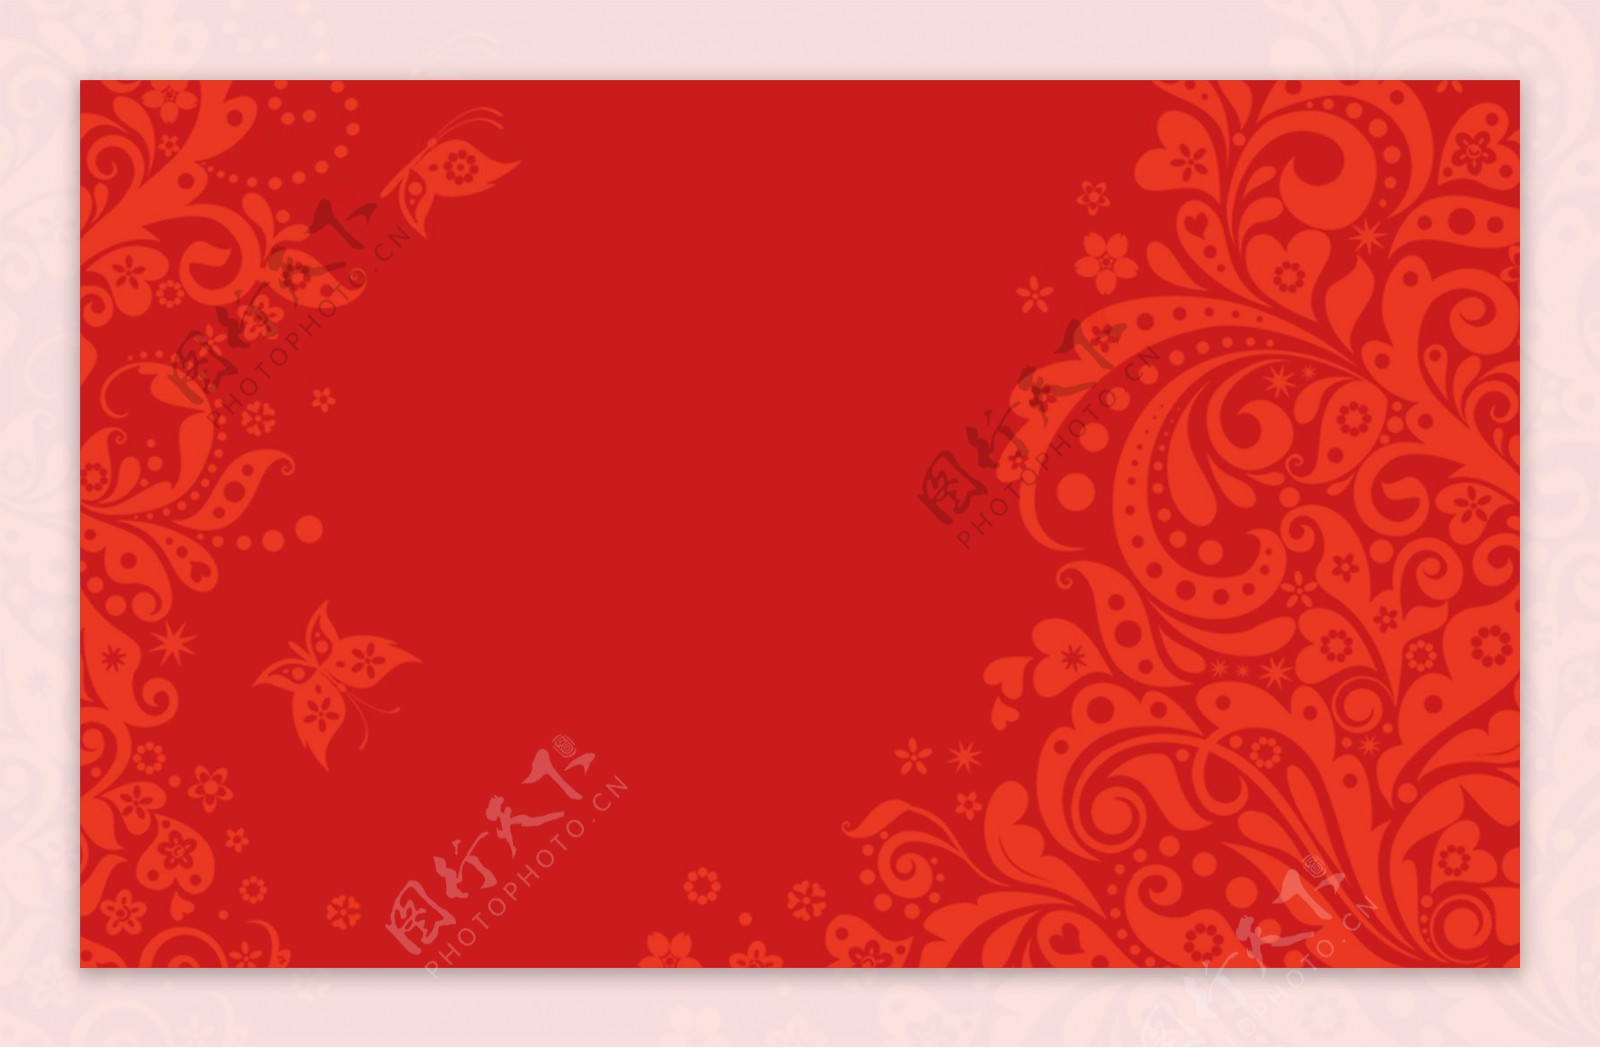 花纹复古红色背景海报素材图片